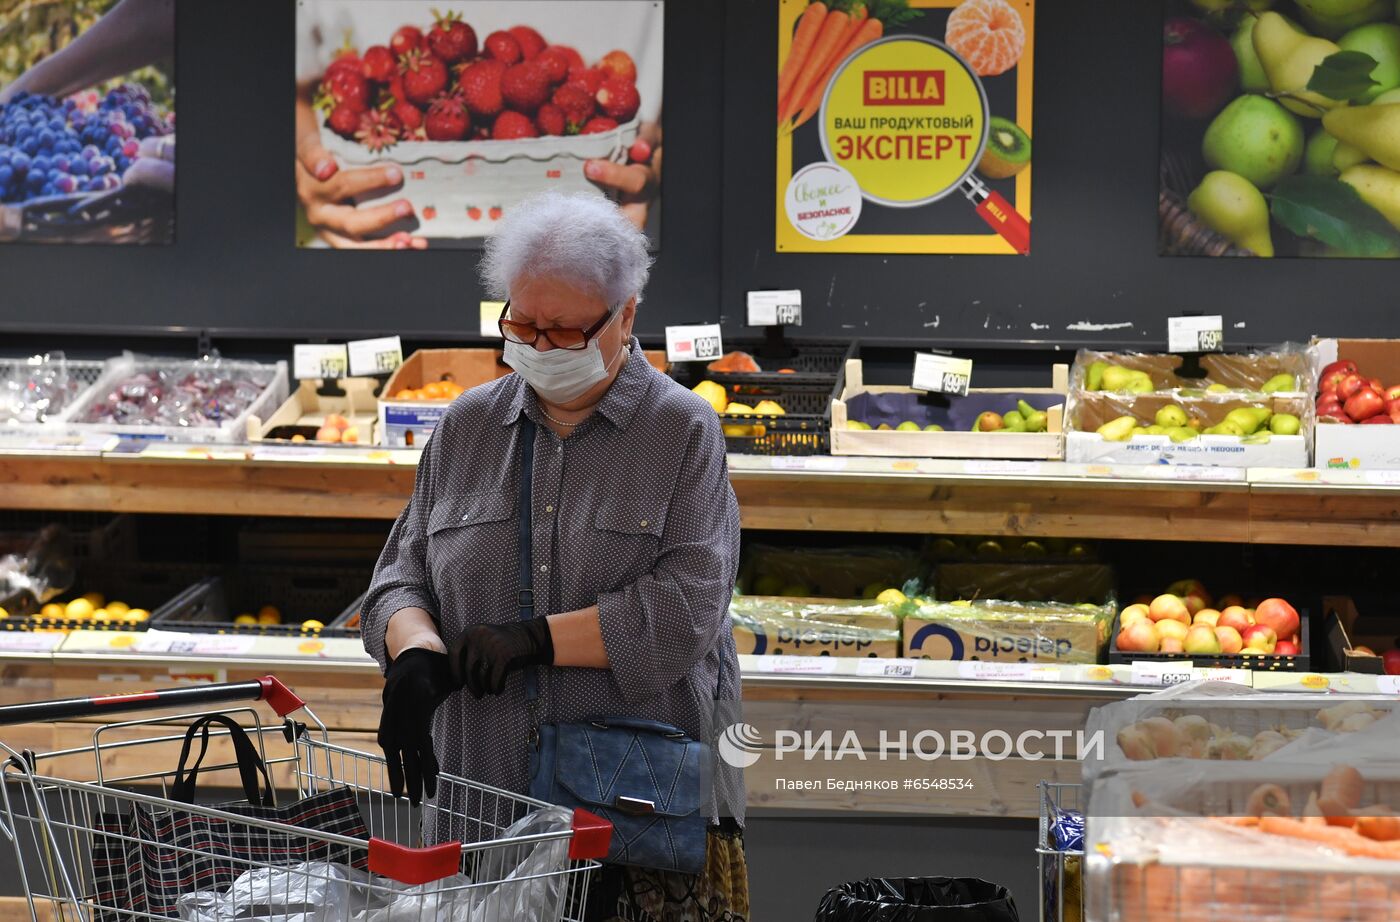 "Лента" купит сеть супермаркетов Billa